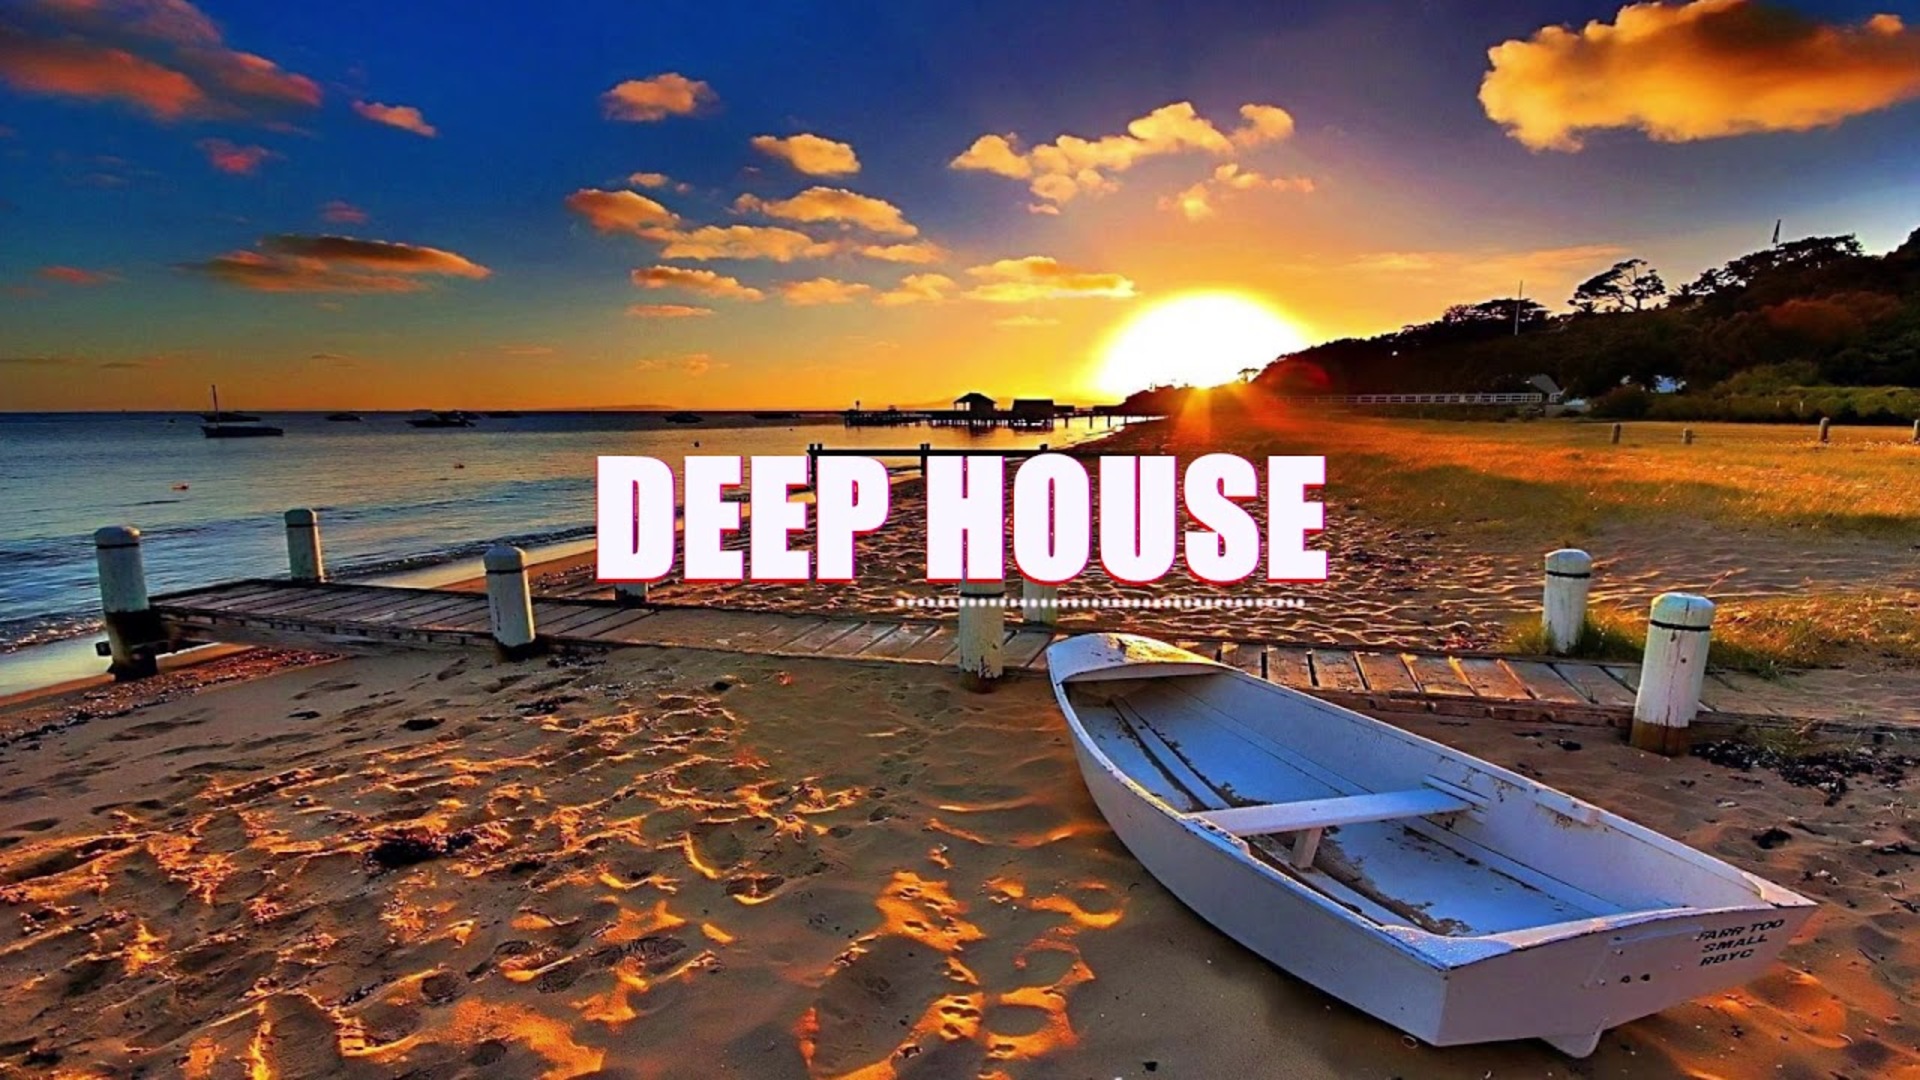 Deep house new